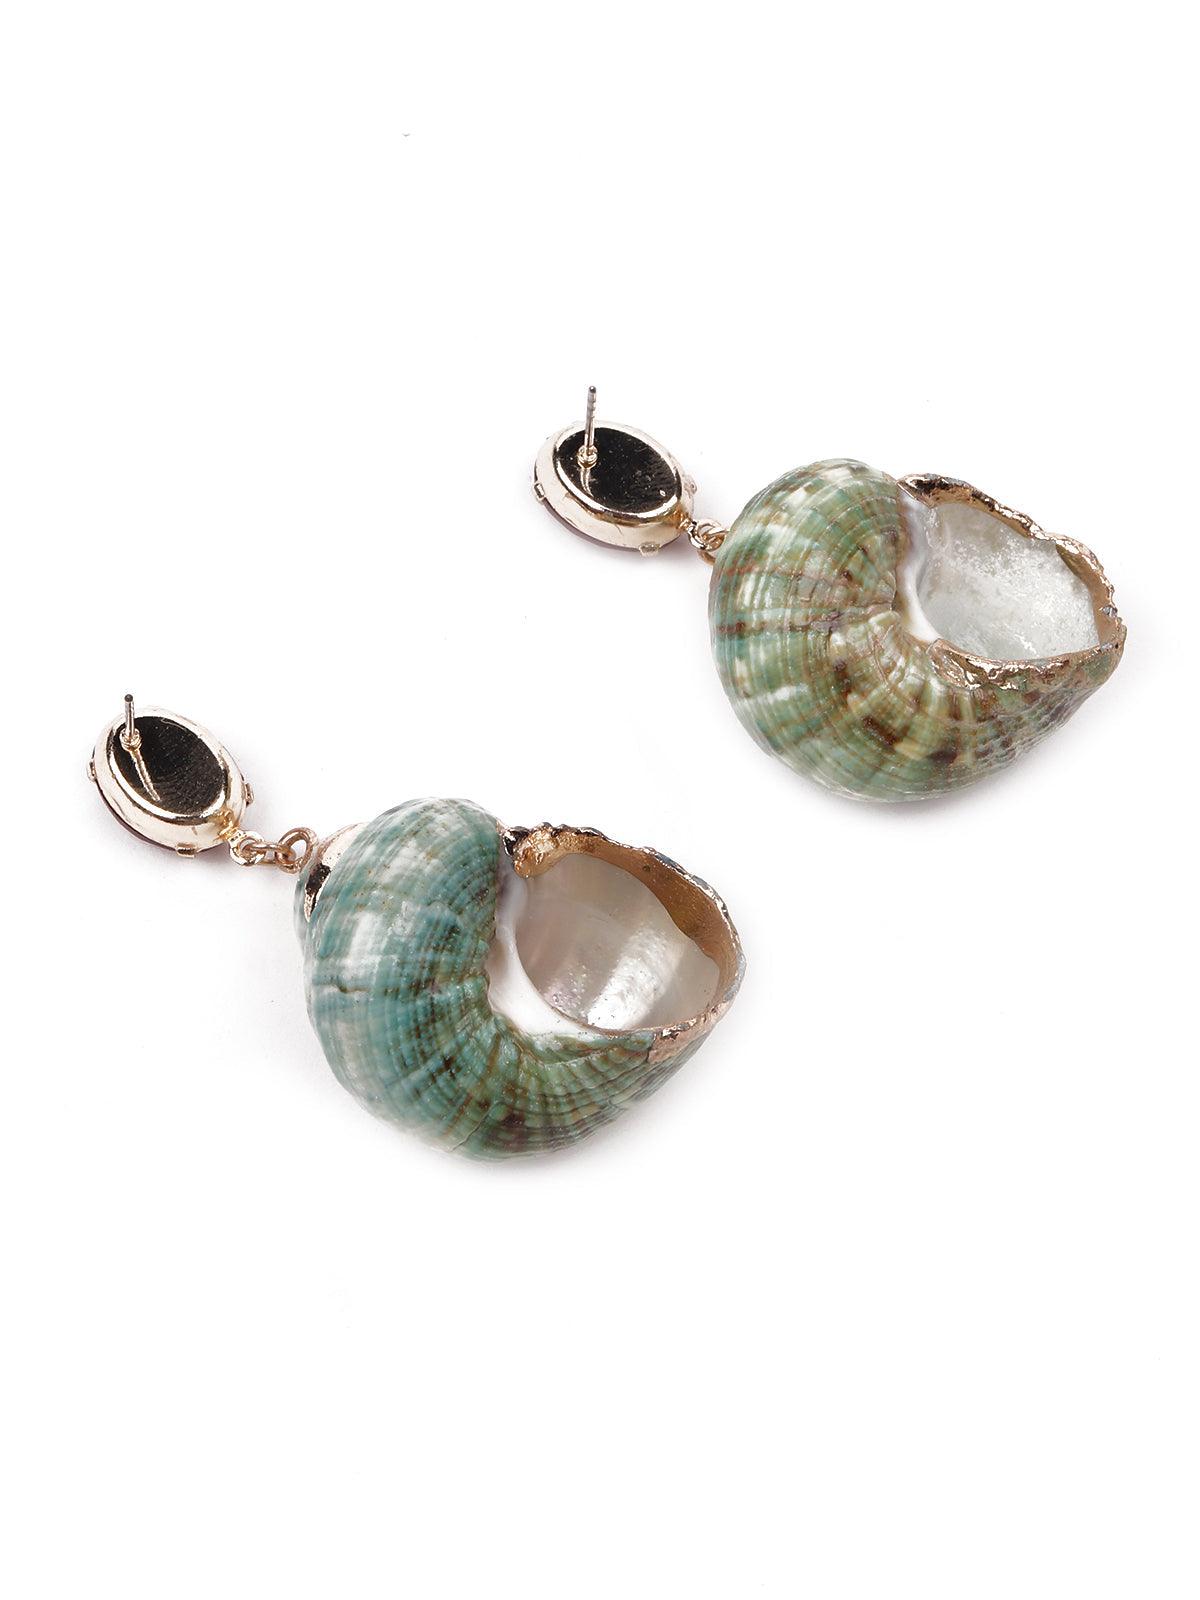 Stunning textured green earrings - Odette